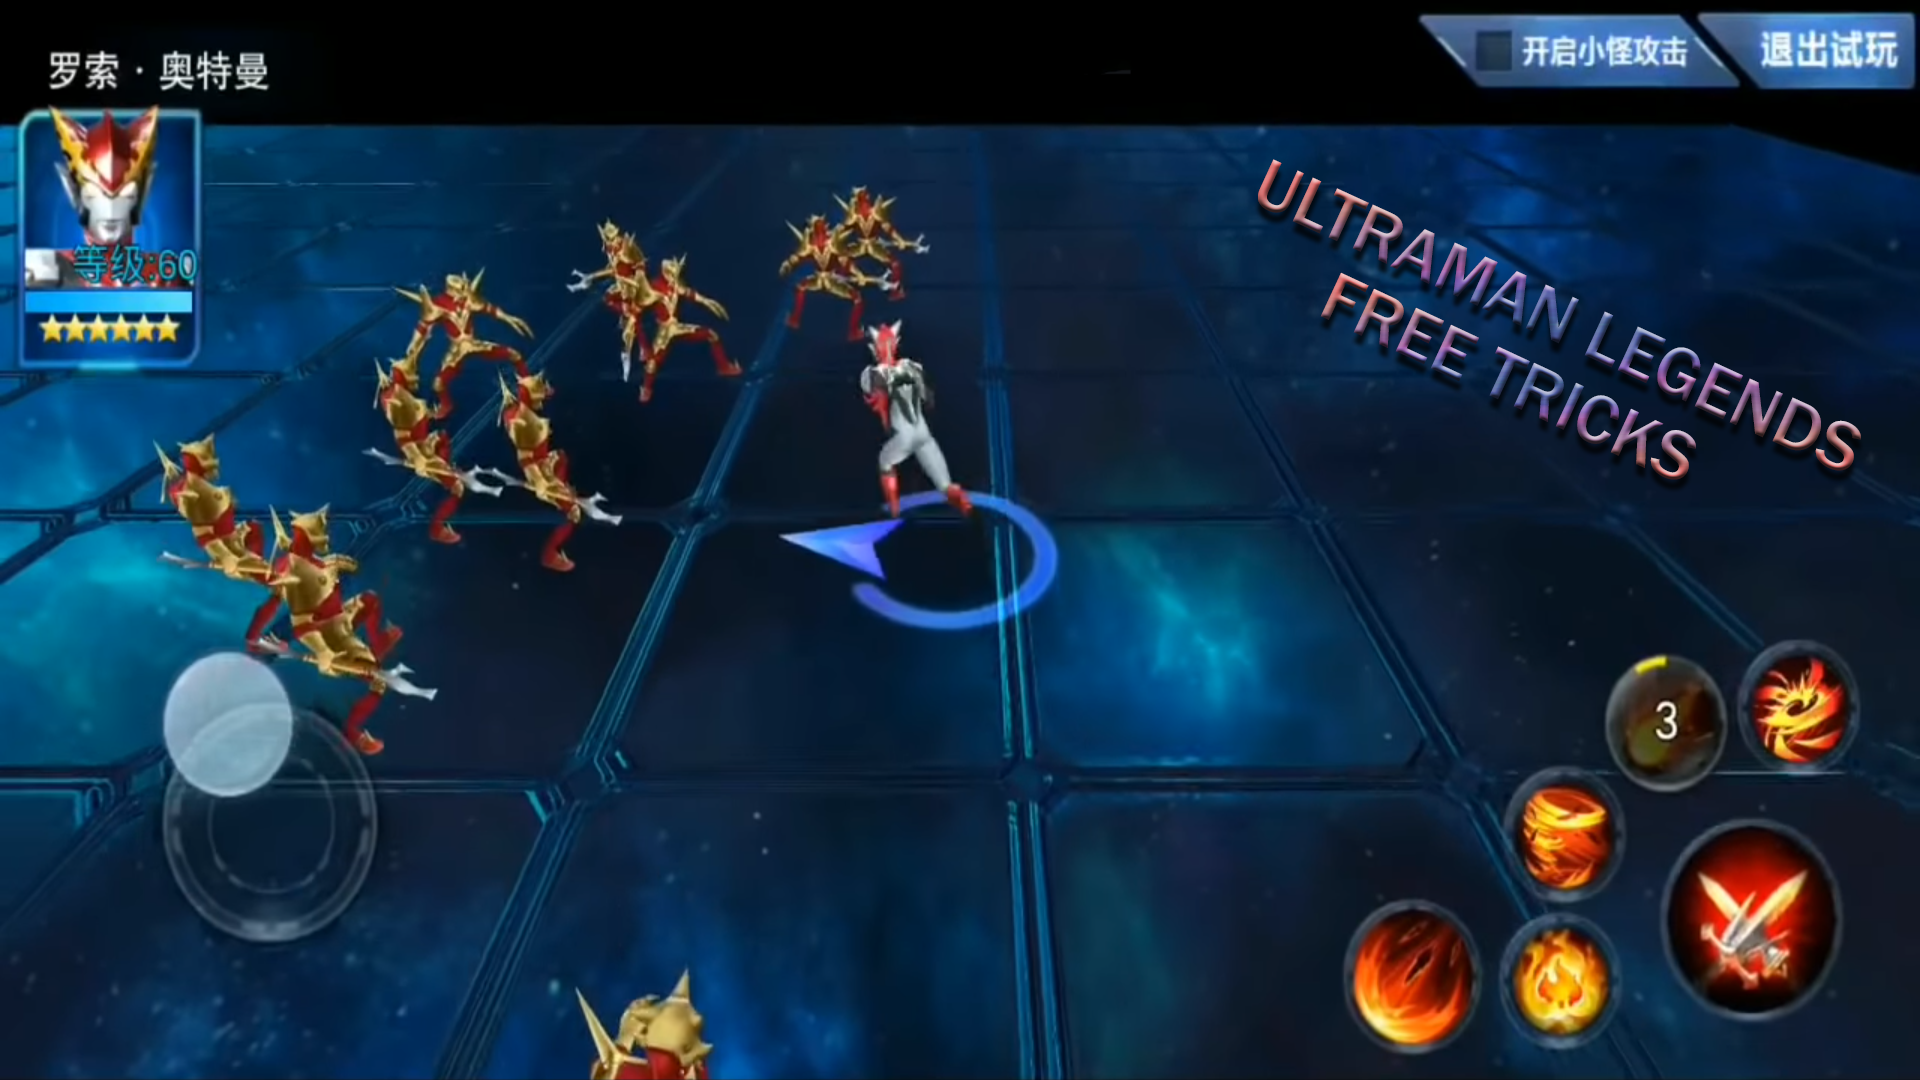 Screenshot 1 of Nuevo truco de Ultraman Legend of Heroes 